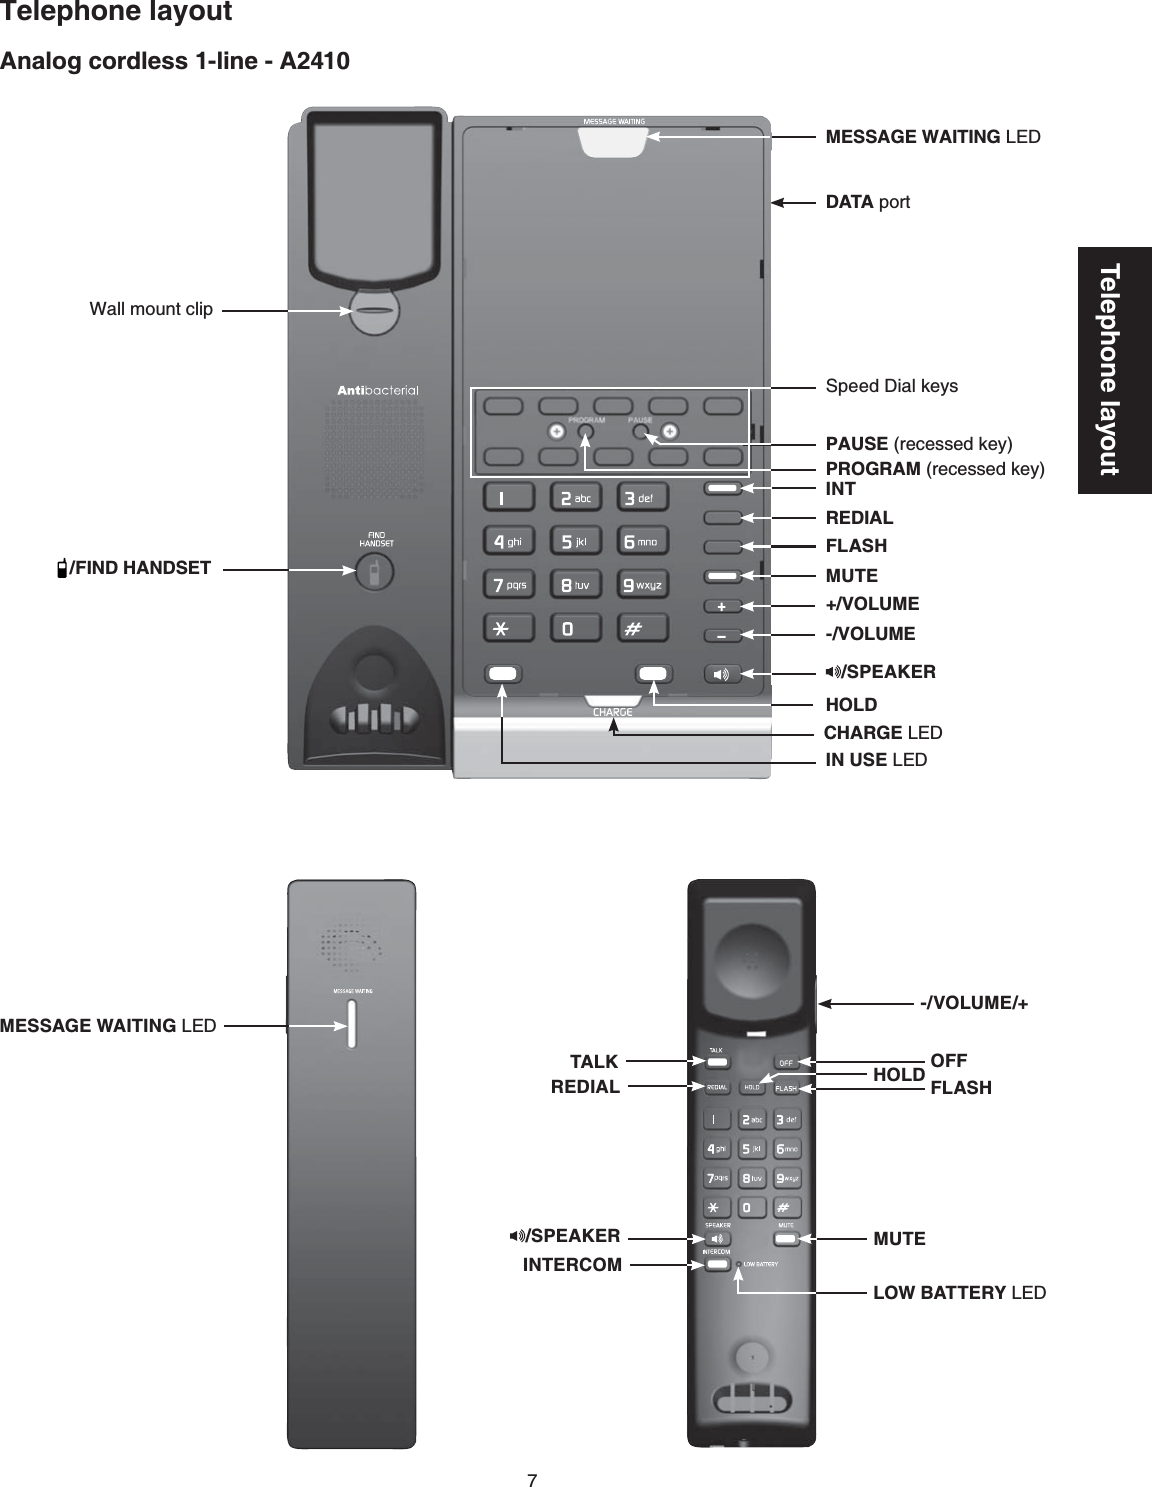 7Telephone layoutAnalog cordless 1-line - A2410Telephone layoutTALKREDIAL HOLD OFFFLASHINTERCOMMUTE-/VOLUME/+MESSAGE WAITING LEDDATA portMESSAGE WAITING LED/SPEAKERLOW BATTERY LEDCHARGE LEDHOLDFLASHMUTEREDIAL/SPEAKER/FIND HANDSETIN USE LEDWall mount clipPROGRAMTGEGUUGFMG[PAUSETGEGUUGFMG[Speed Dial keysINT-/VOLUME+/VOLUME